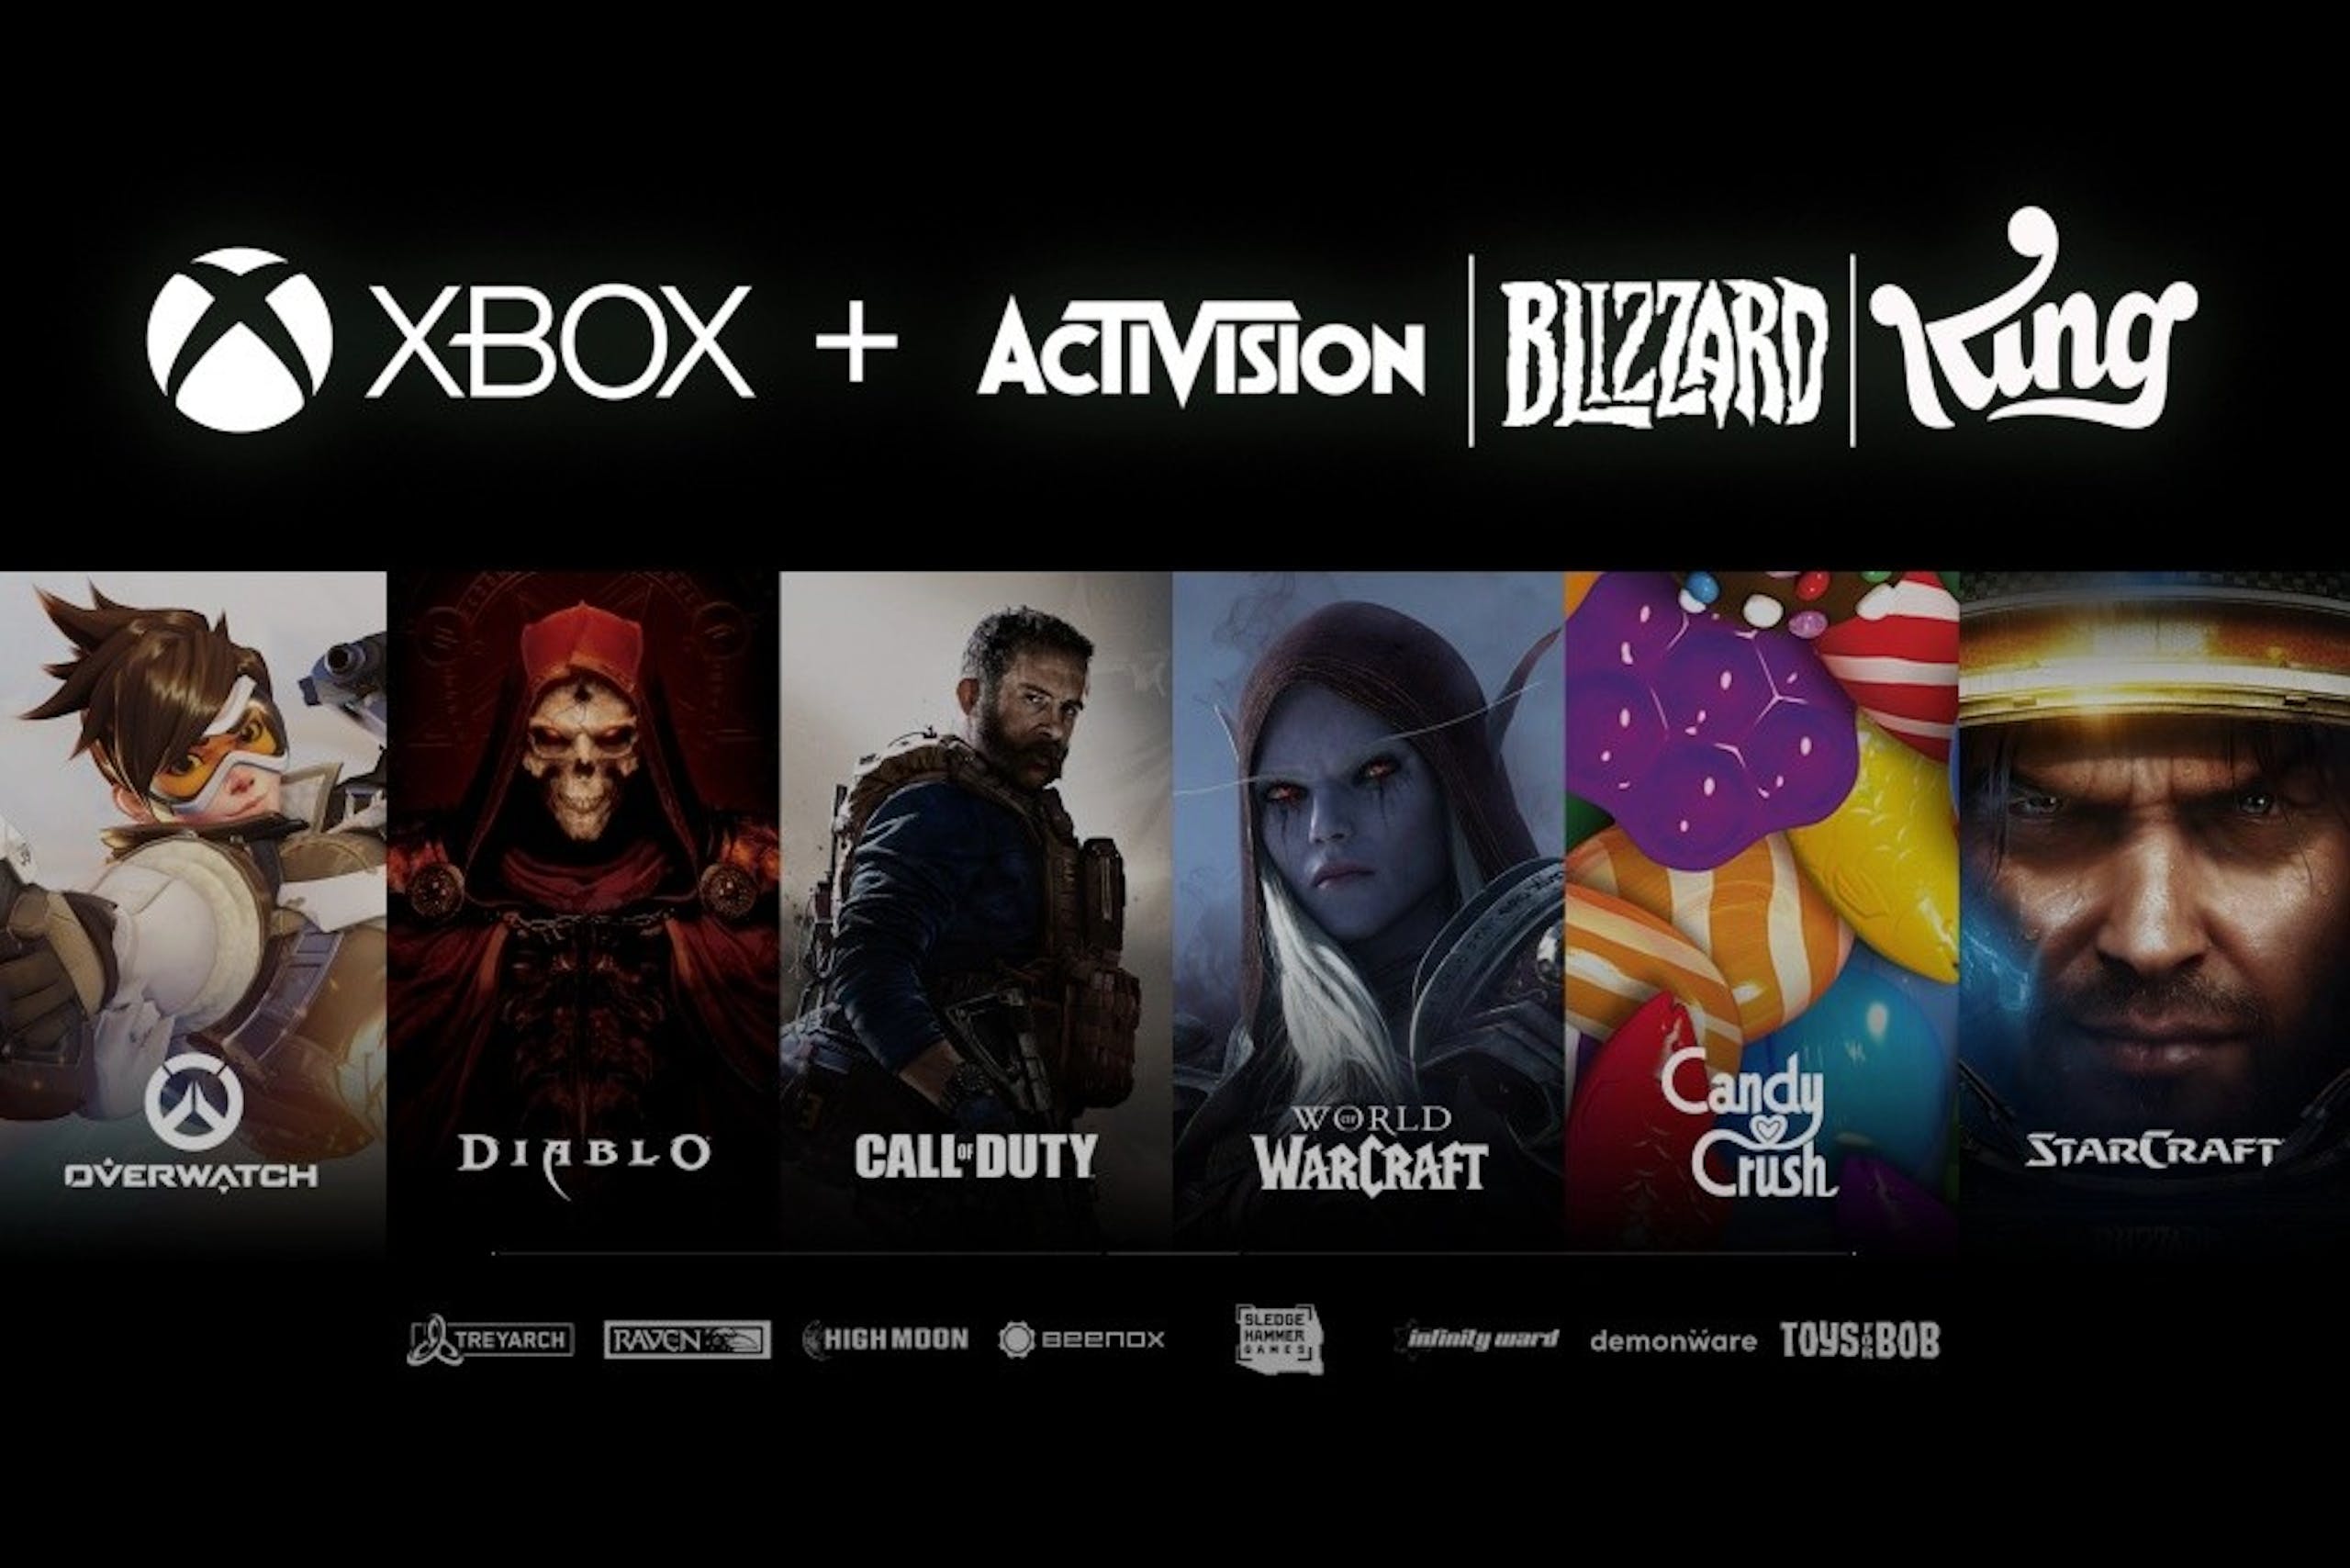 照片中提到了OVERWATCH、XBOX + ACTIVISION BILZZARD King、DIABLO，跟動視暴雪、的Xbox有關，包含了微軟動視、菲爾·斯賓塞、微軟收購動視暴雪、Xbox One、Xbox系列X和系列S